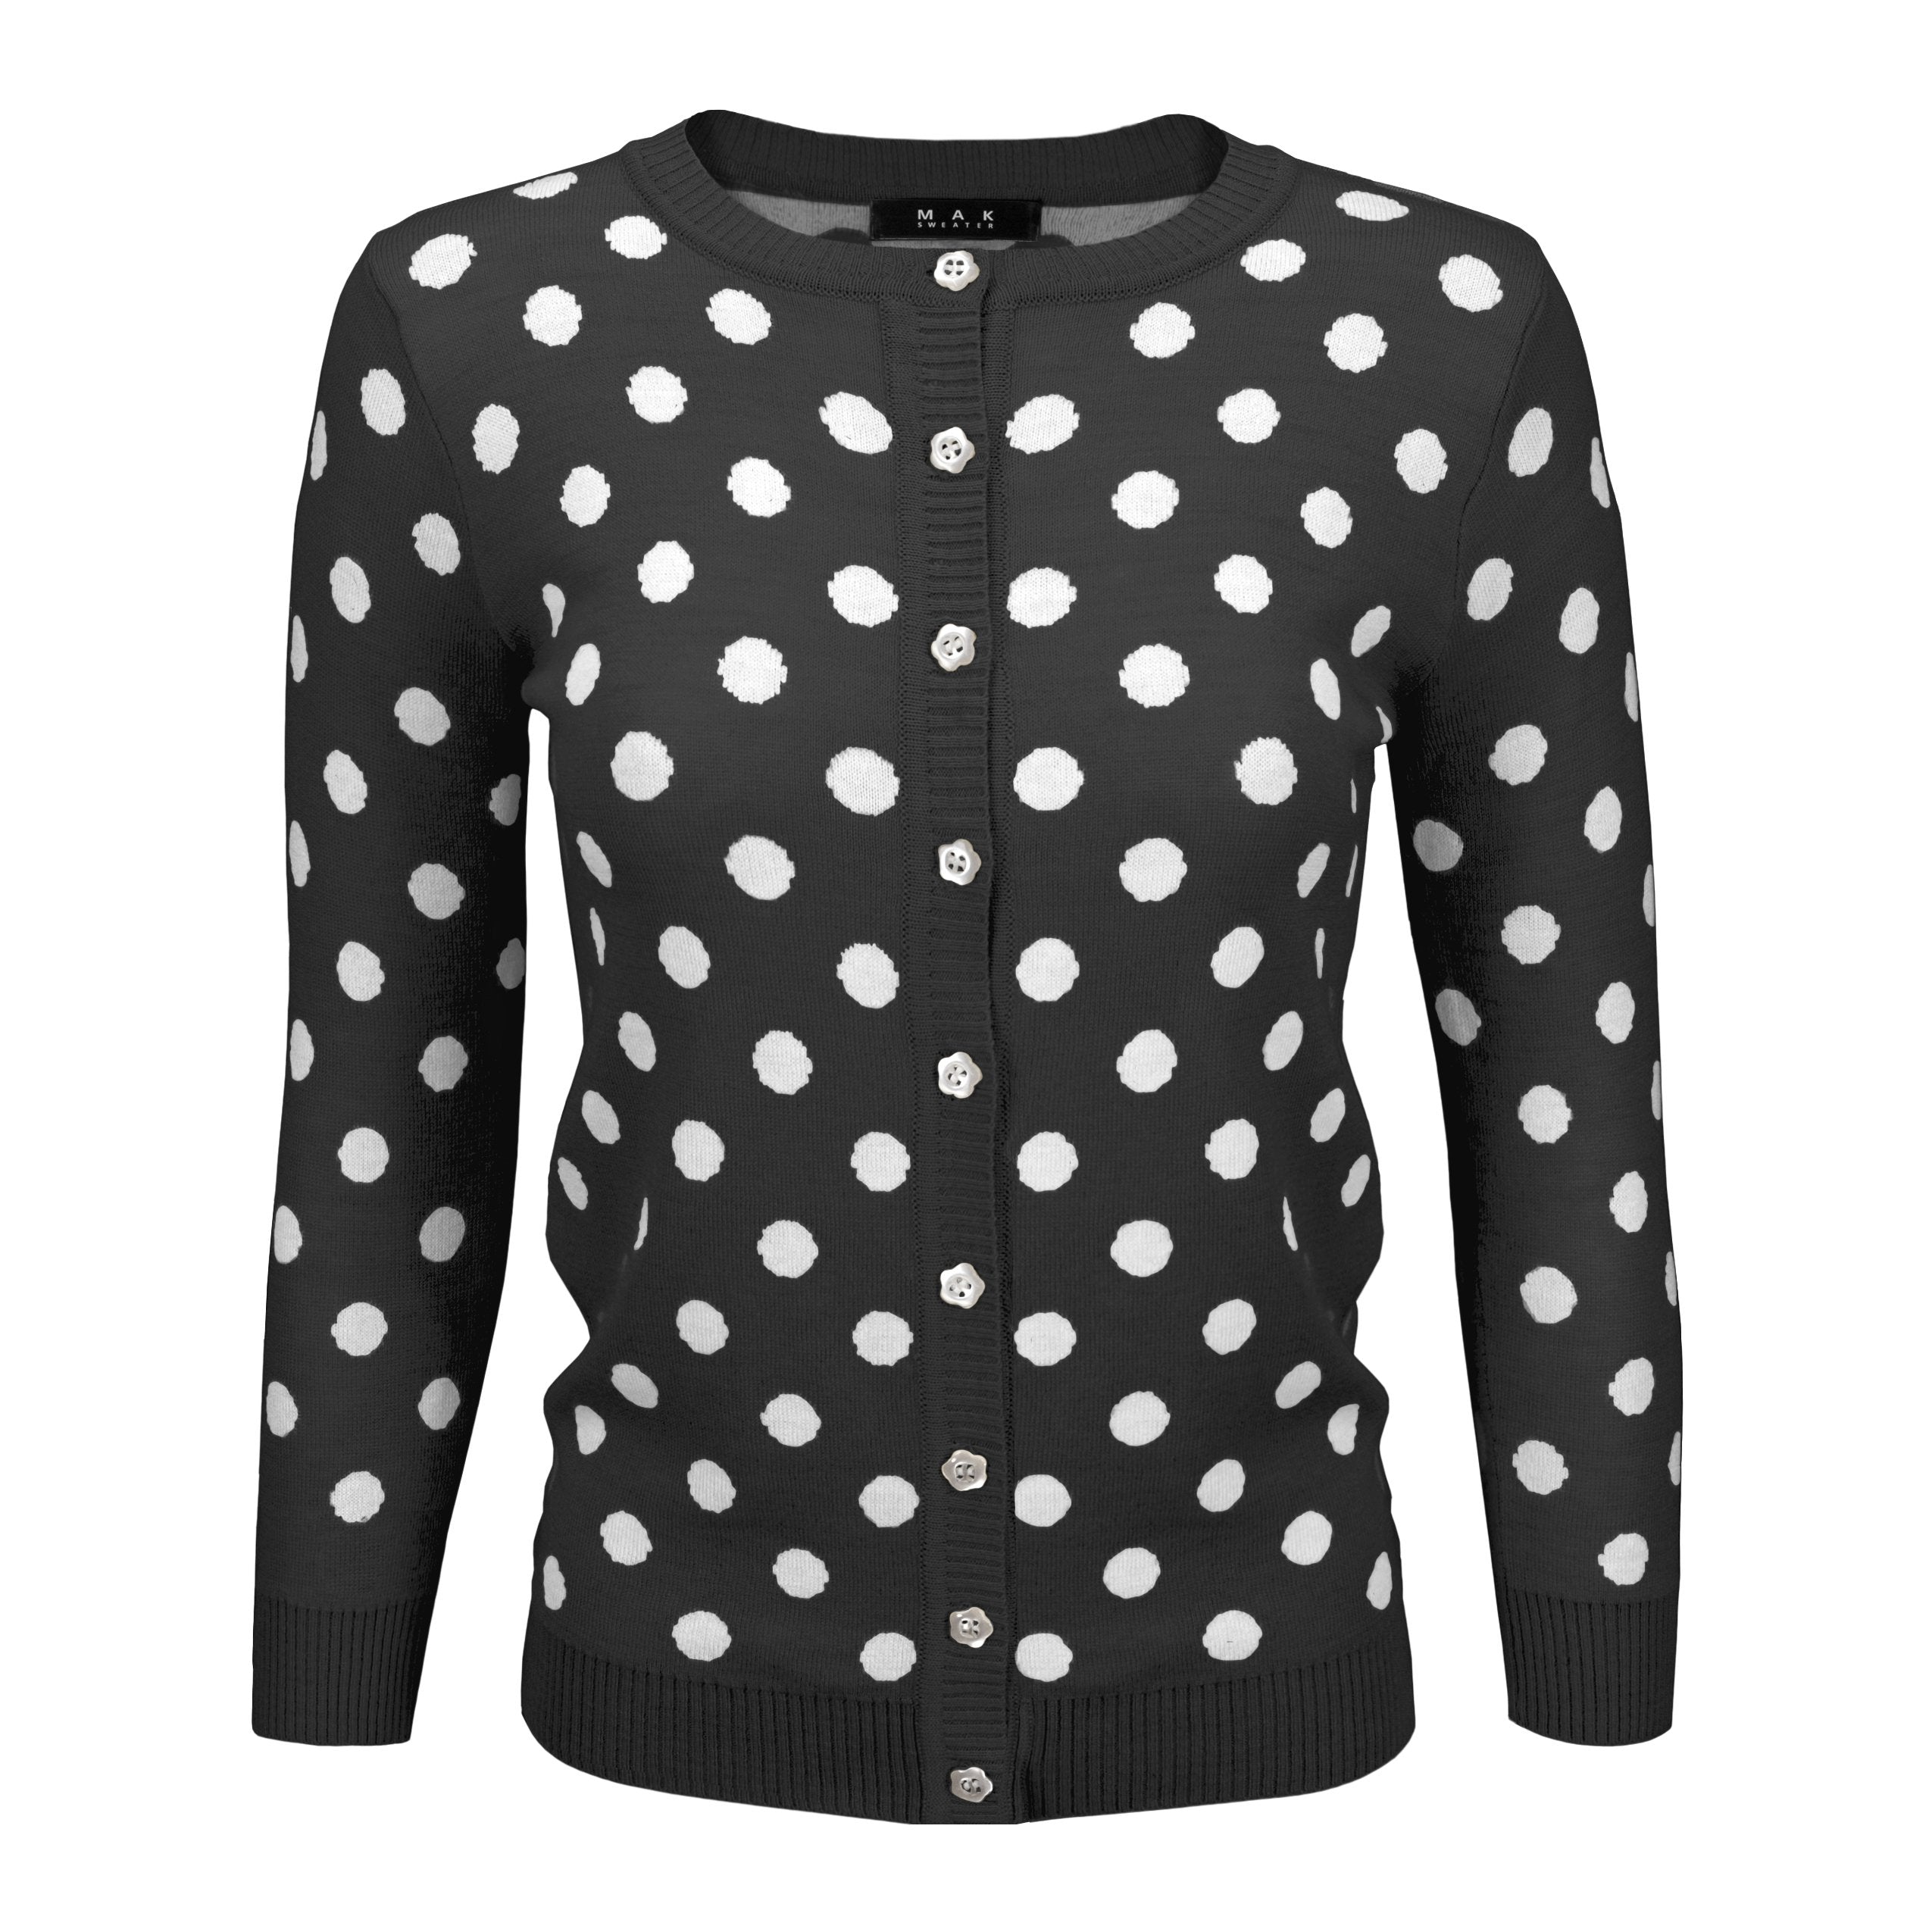 Loft Outlet Women's Cardigan Sweater Black Polka Dot Velvet Dots